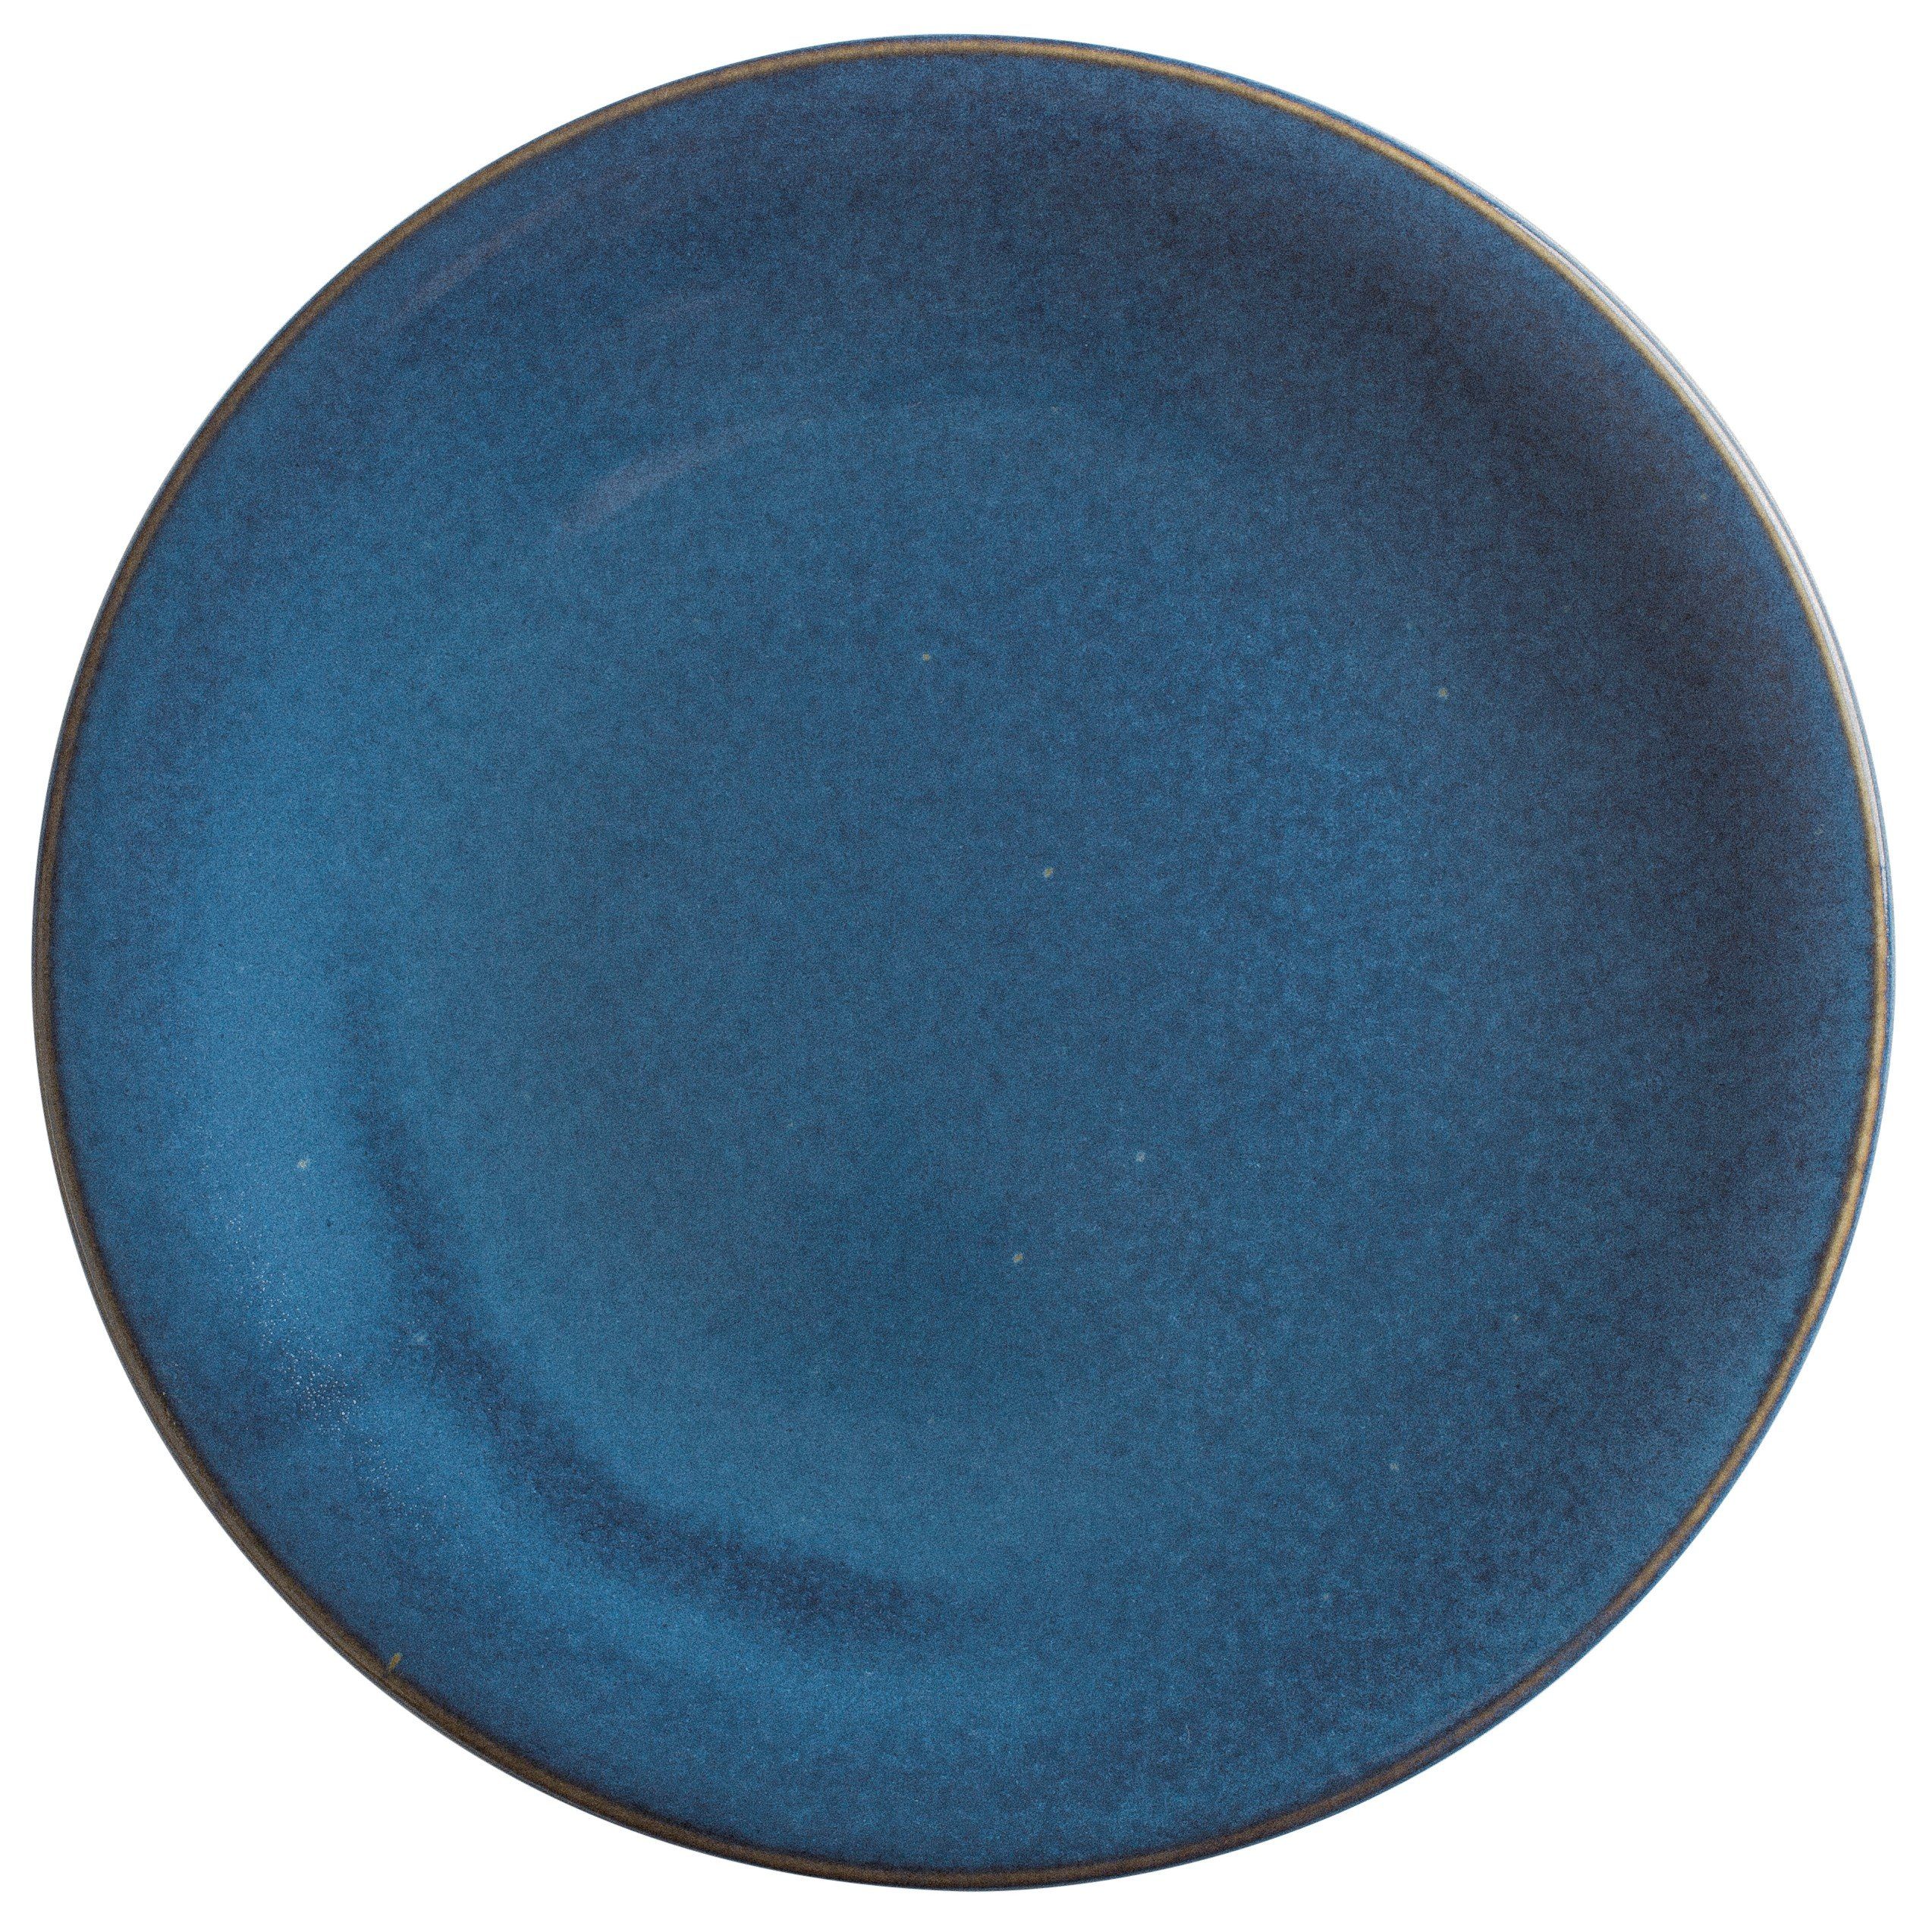 Kahla Speiseteller Homestyle Germany Handglasiert, atlantic blue Made in 26,5 cm